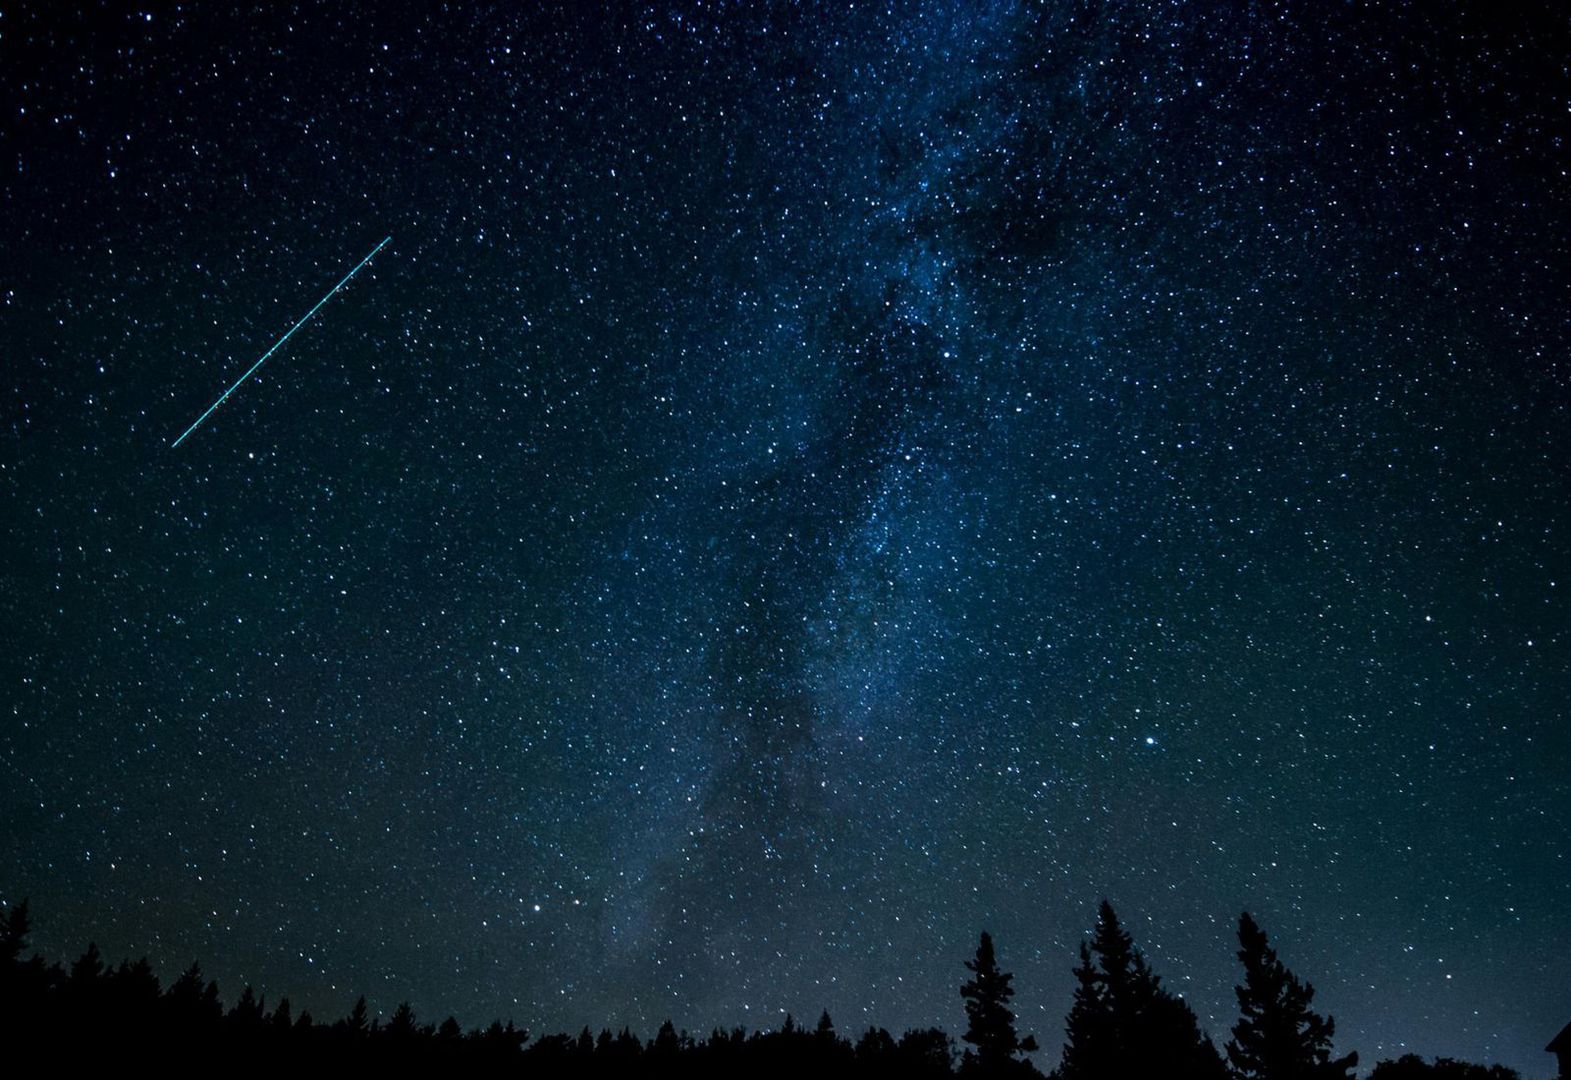 Deszcz meteorów. Niezwykły spektakl na niebie w maju